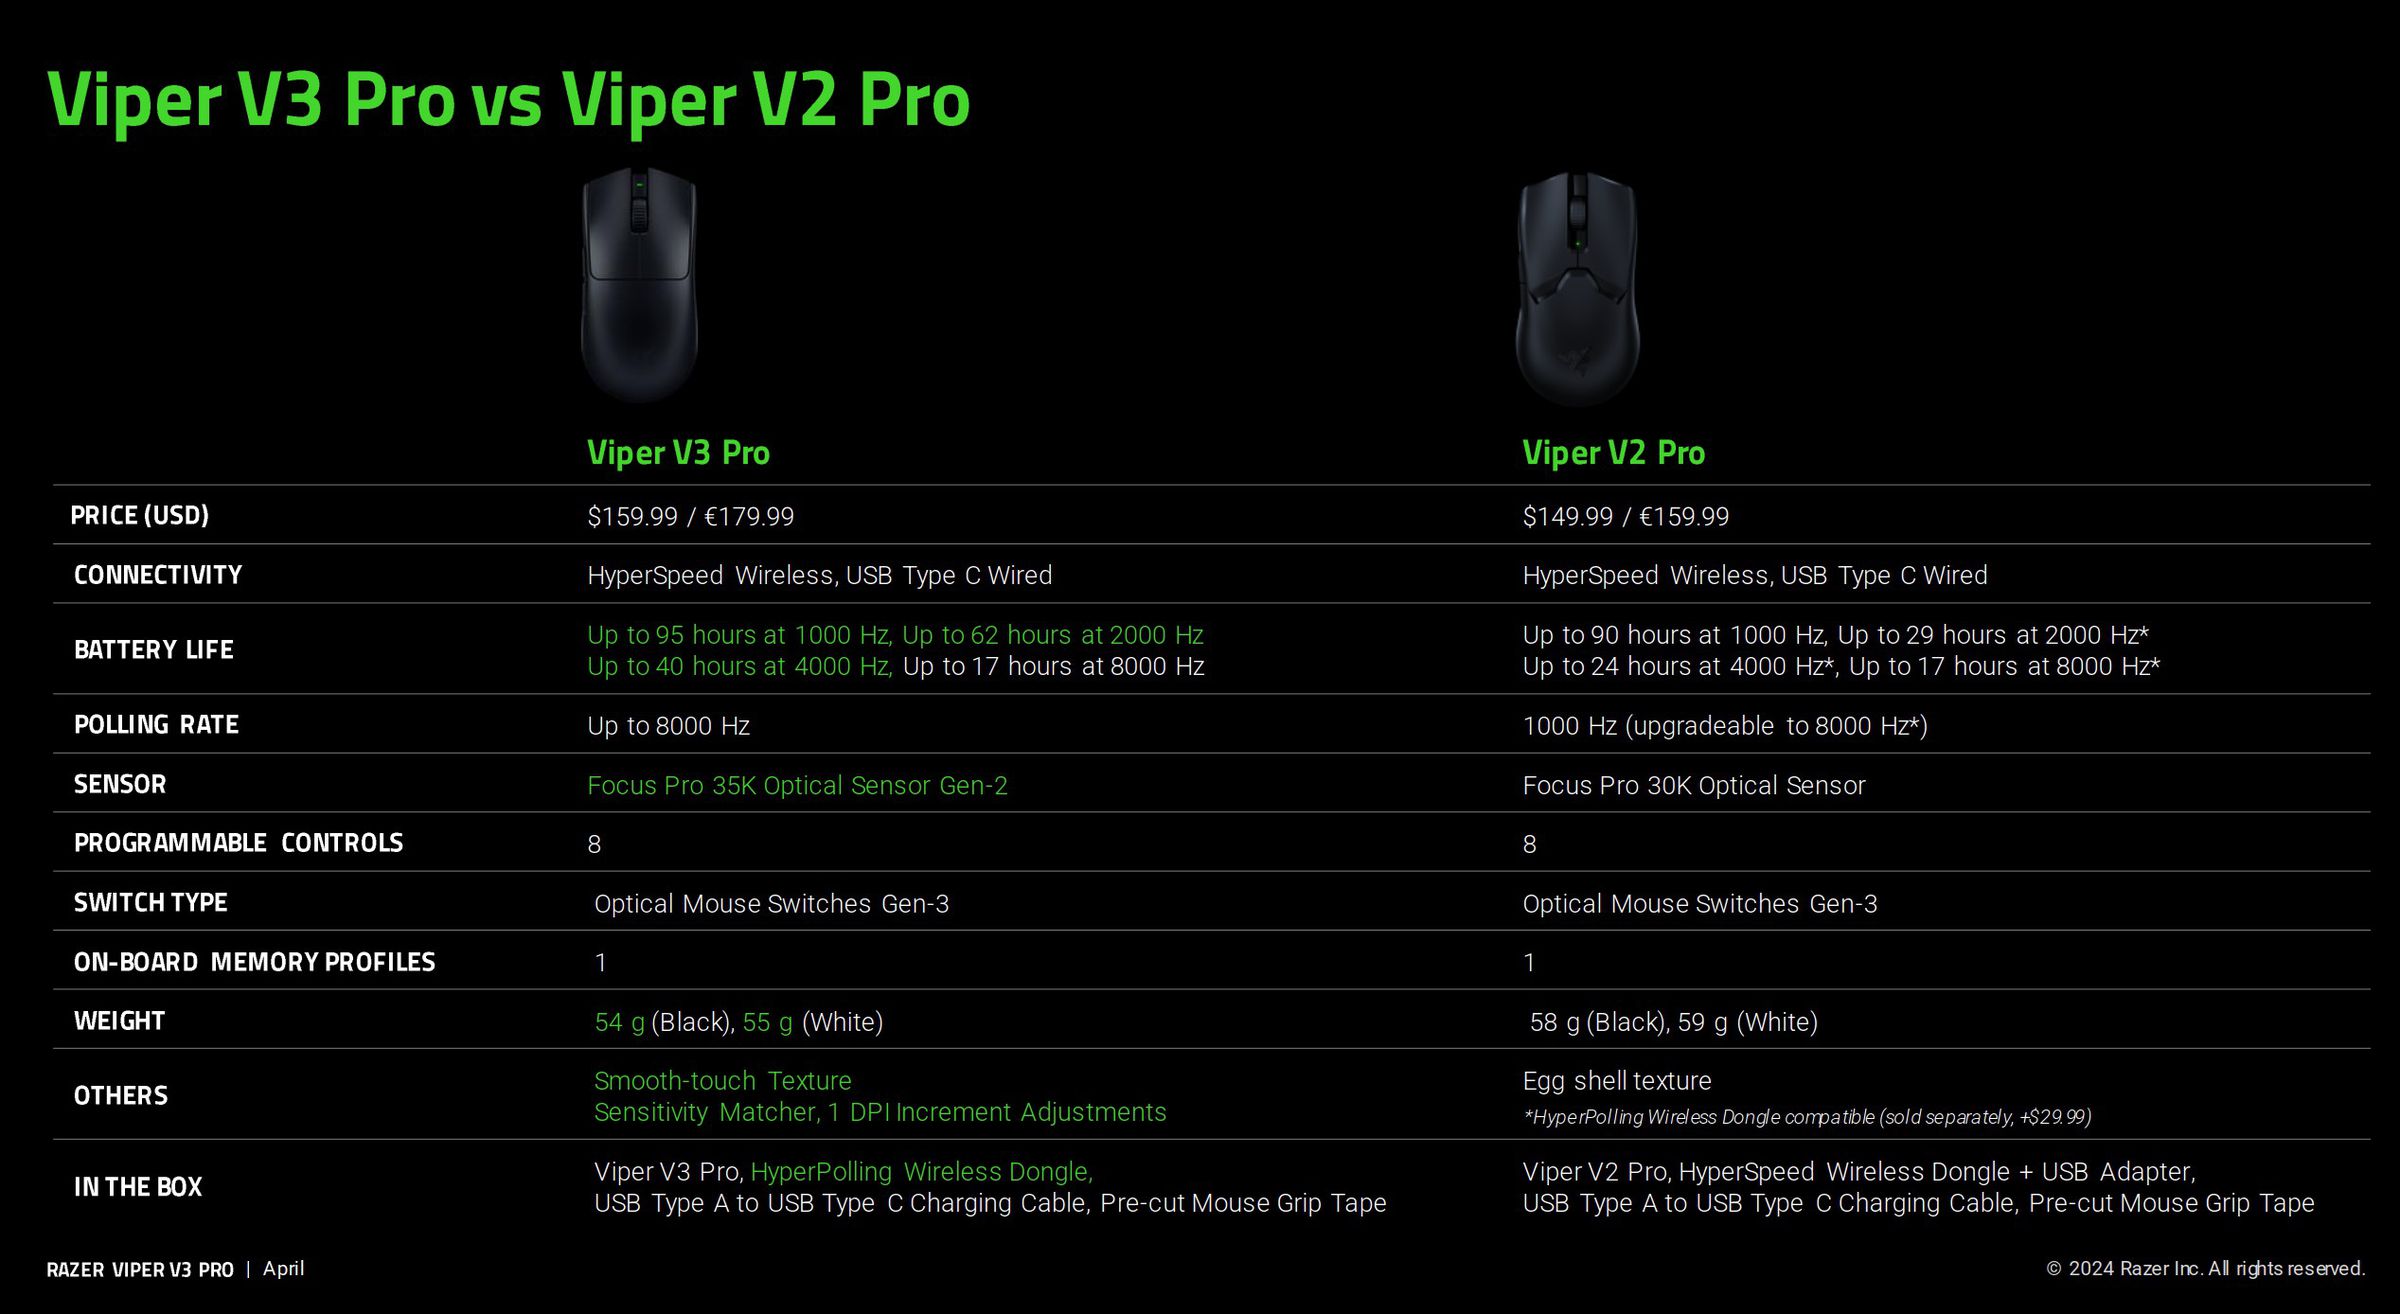 Viper V3 Pro differences, according to Razer.